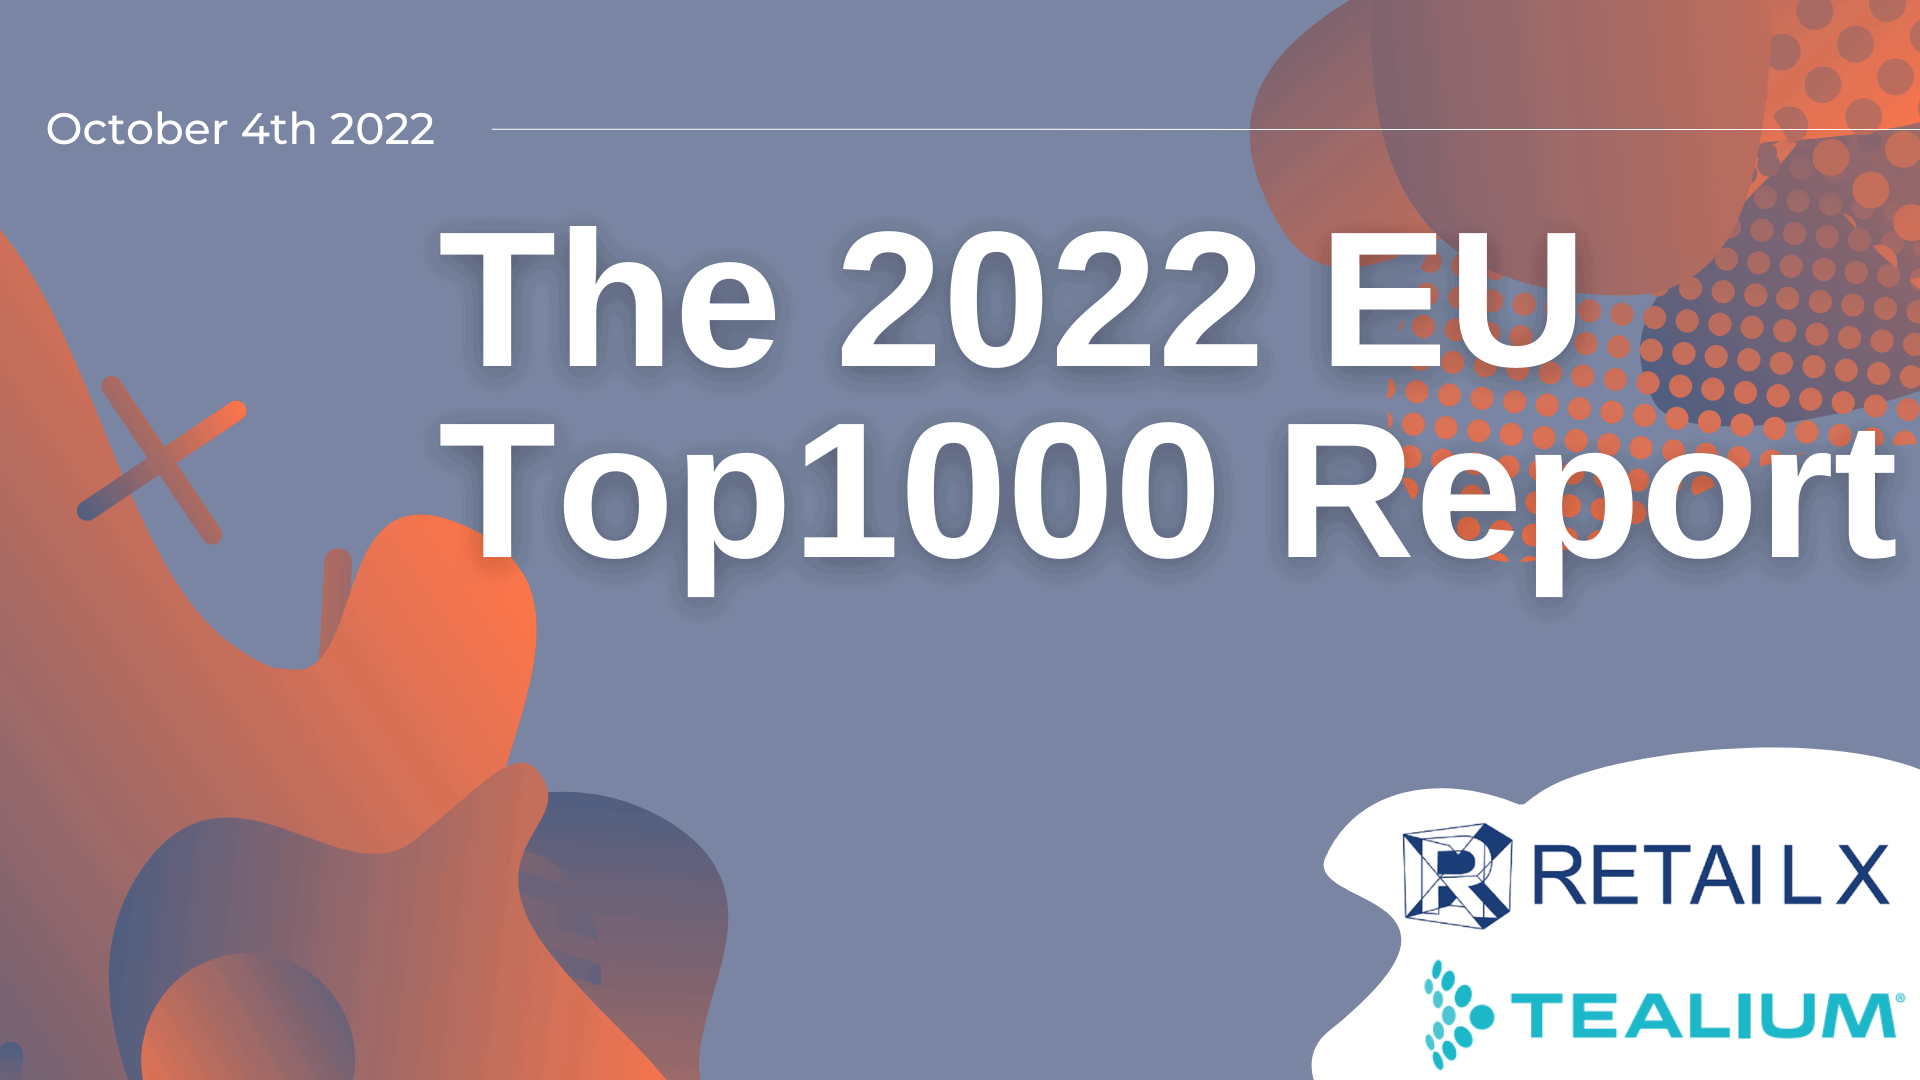 The 2022 EU Top1000 Report